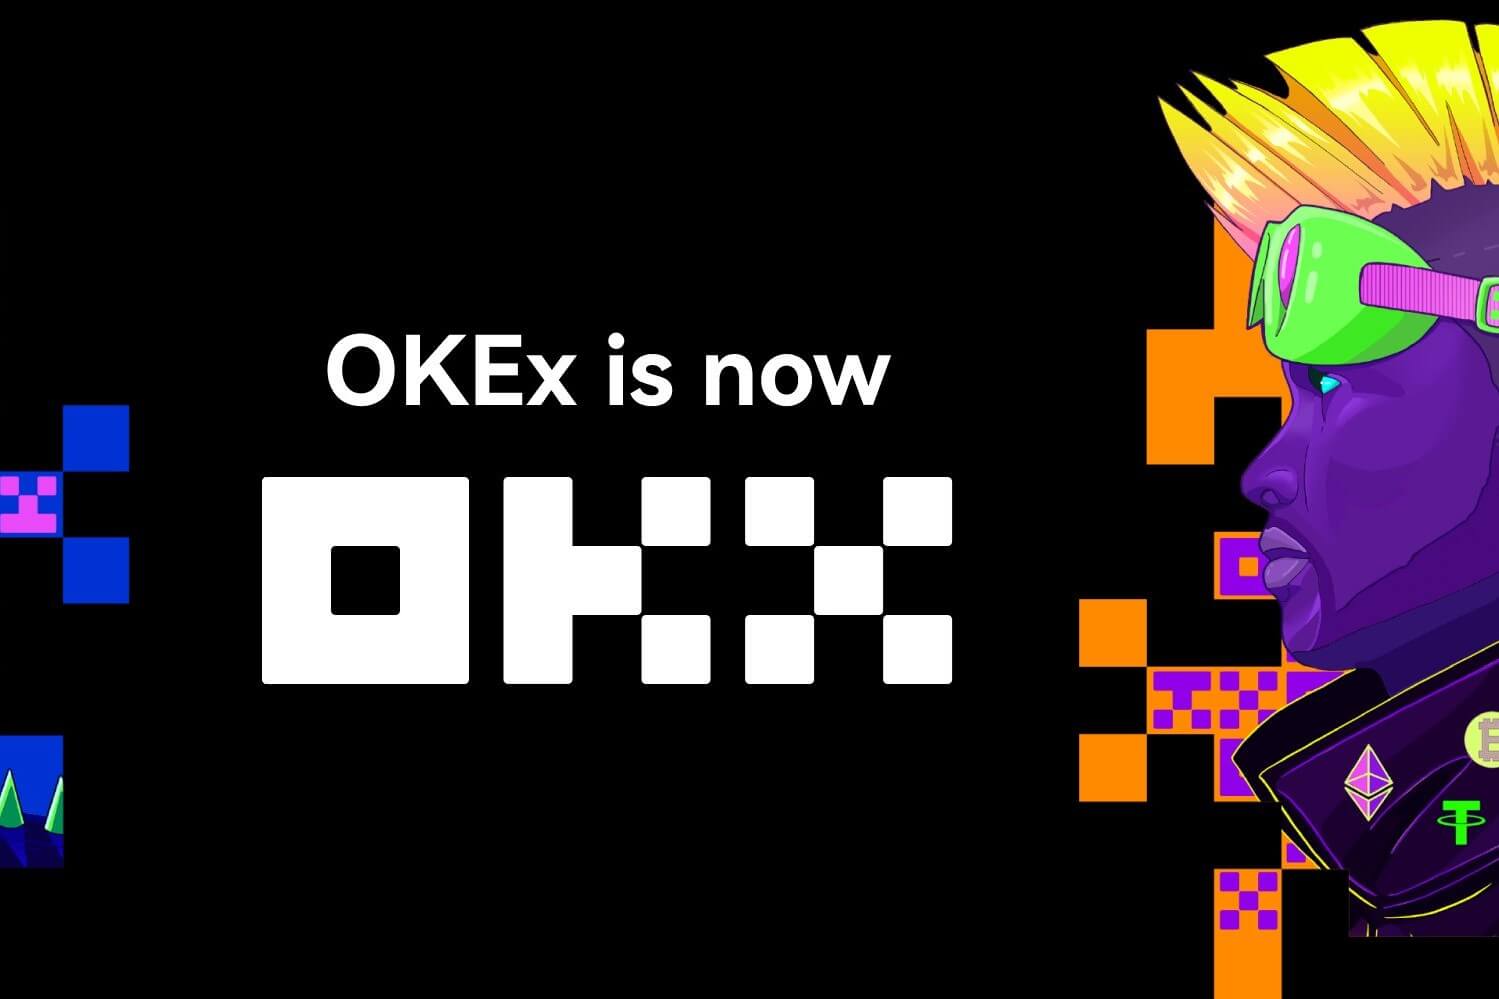 OKEx переименовалась в OKX, поскольку вышла за рамки обычной биржи